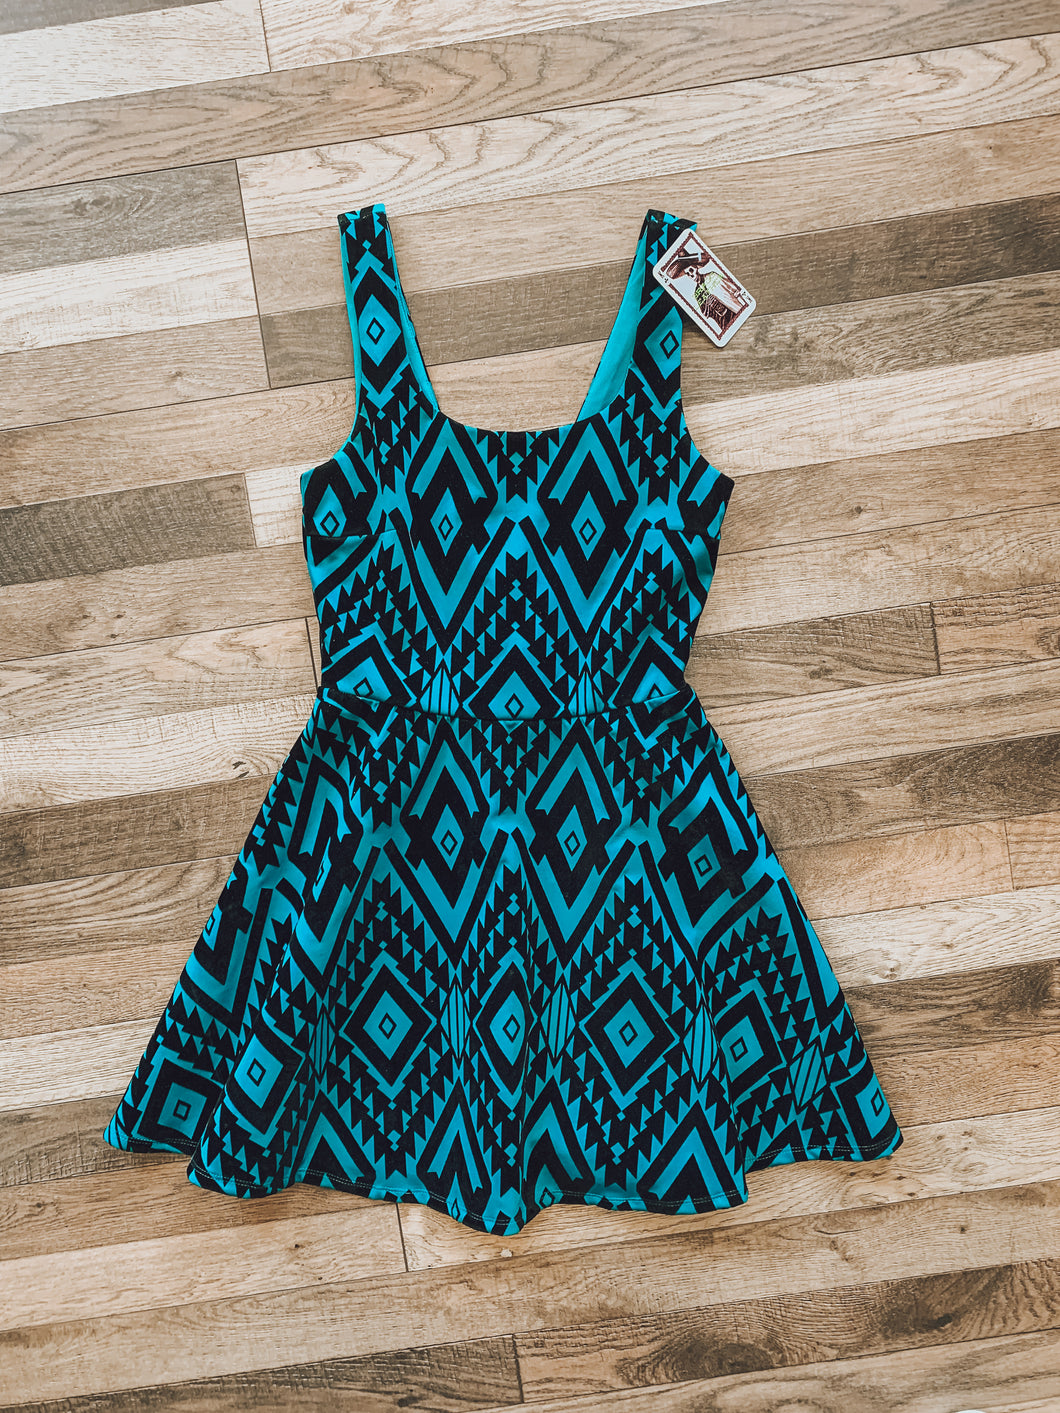 Tribal print Dress—size S (BAC)